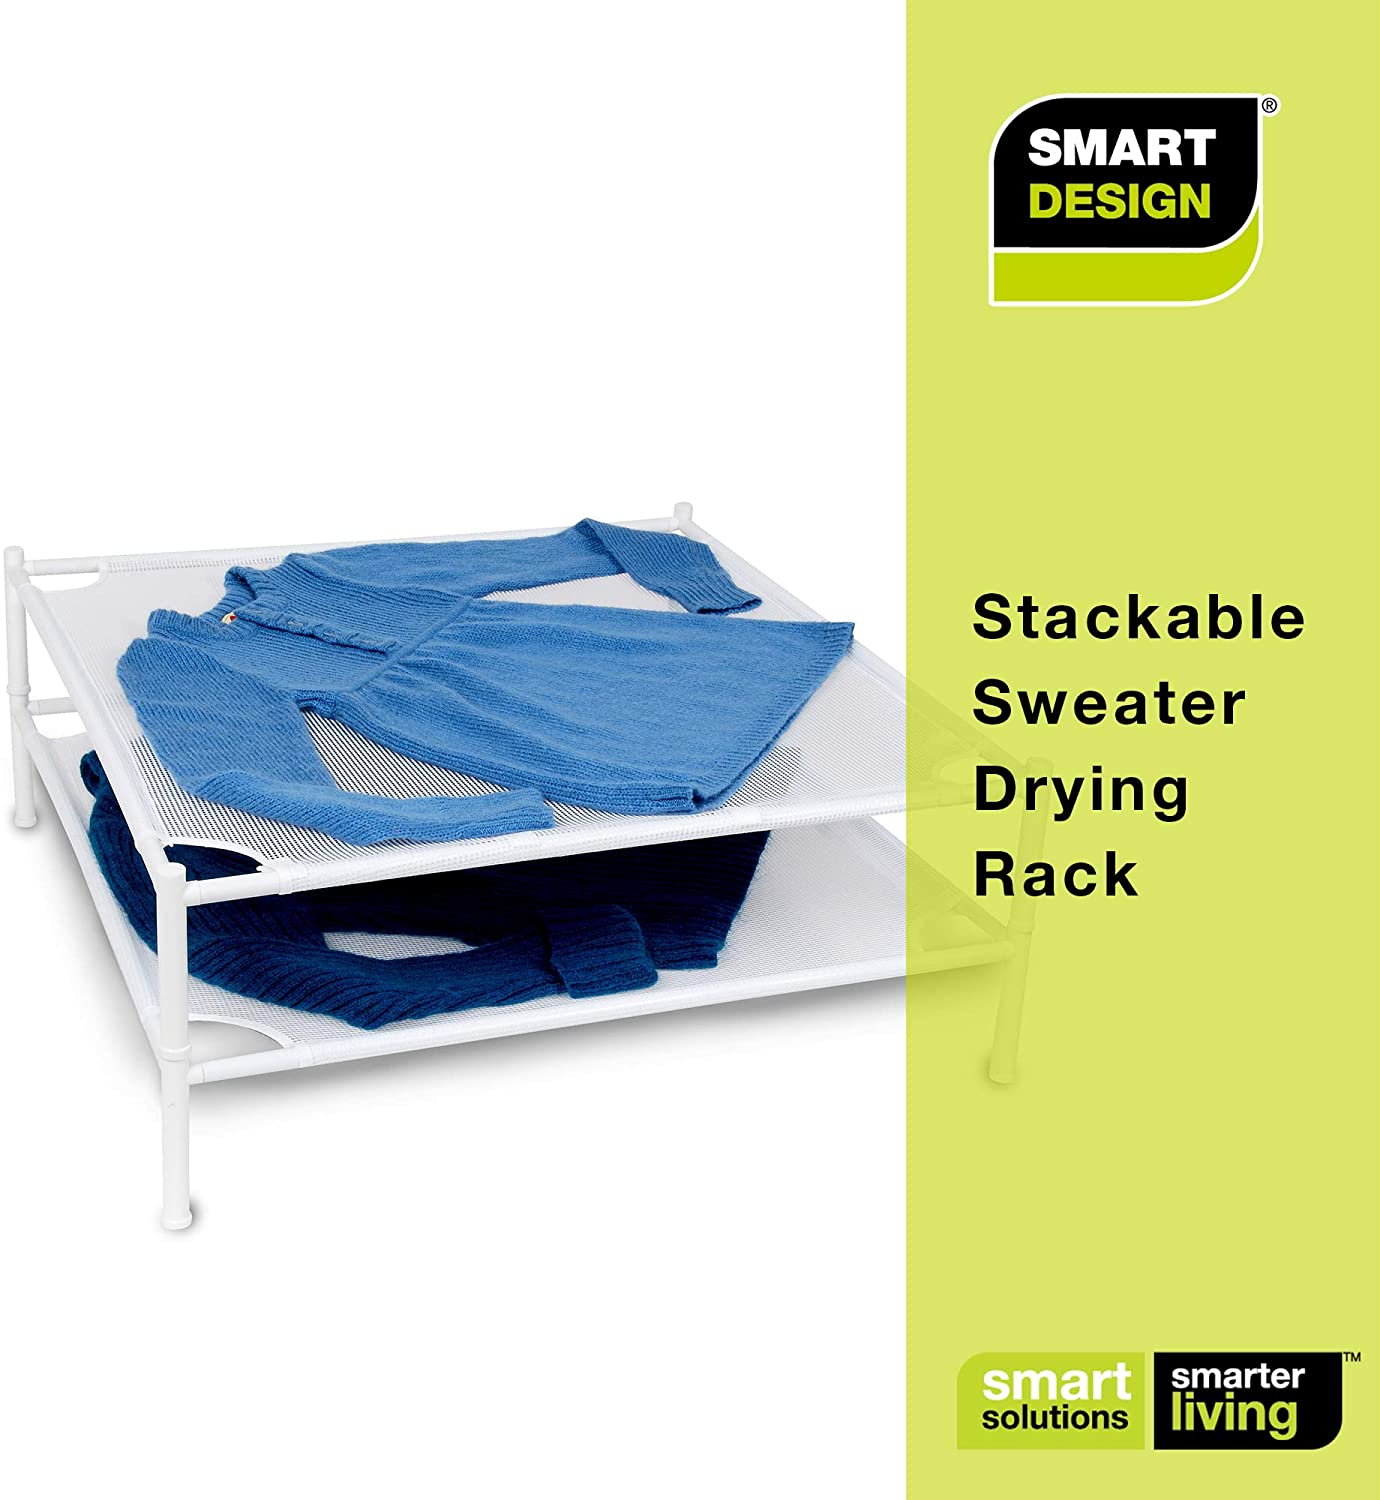 Stackable Sweater Dryer Rack with 4 Legs - Smart Design® 8